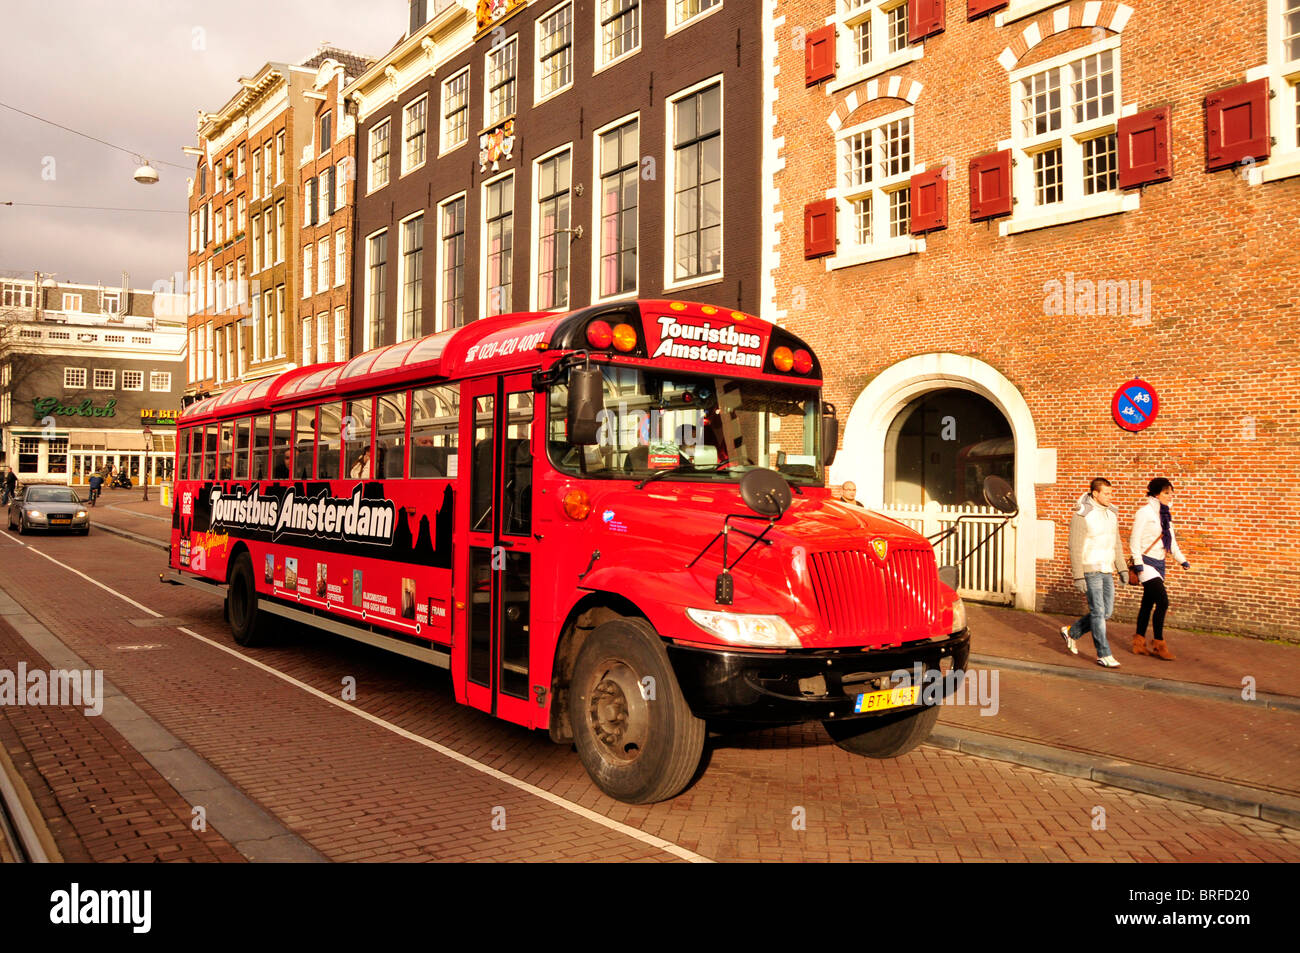 Bus touristique, Amsterdam, Hollande, Pays-Bas, Europe Banque D'Images